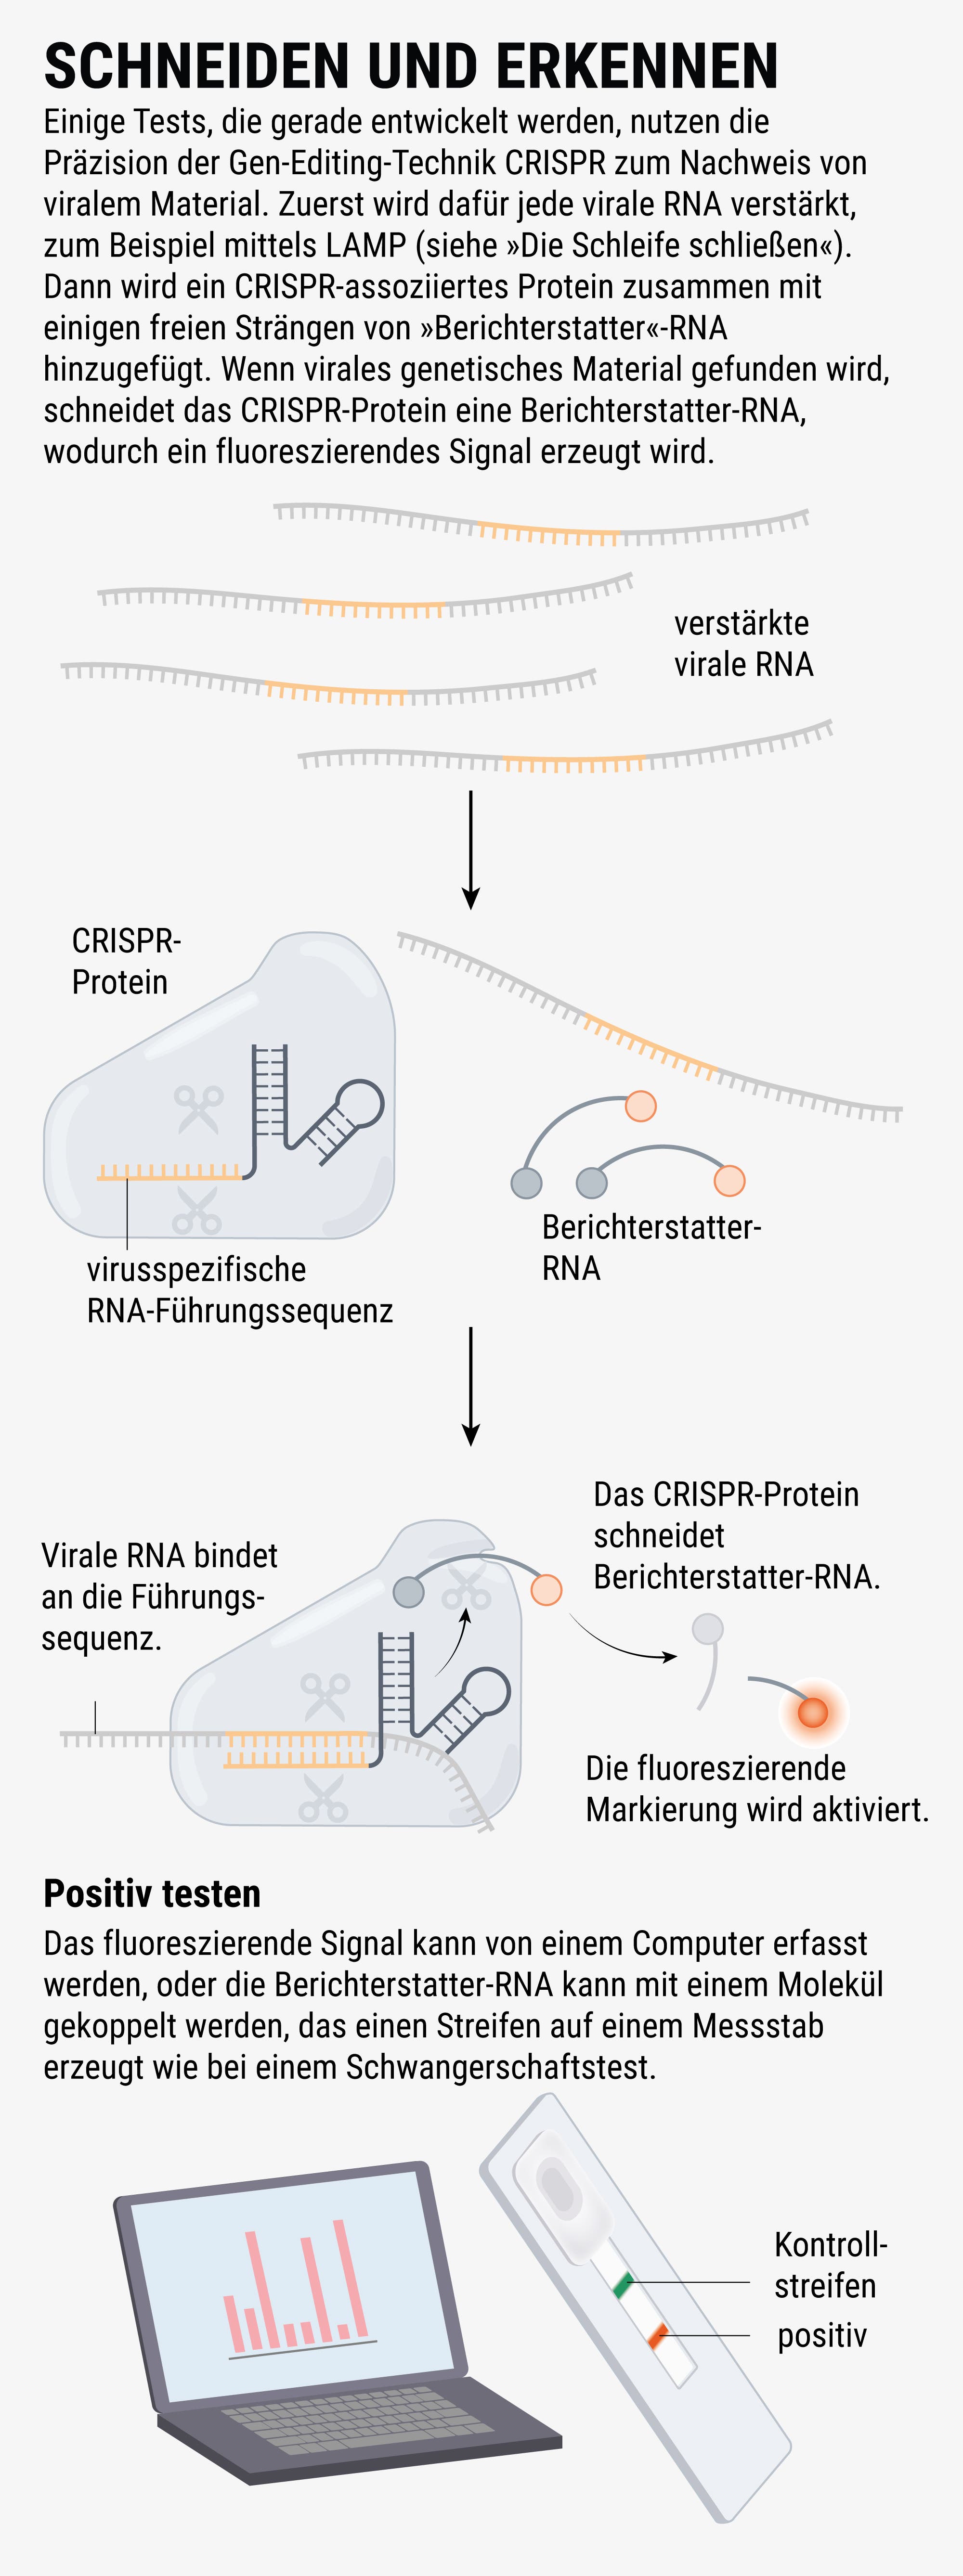 Einige Tests, die gerade entwickelt werden, nutzen die Präzision des Gen-Editing Technik CRISPR zum Nachweis von viralem Material.